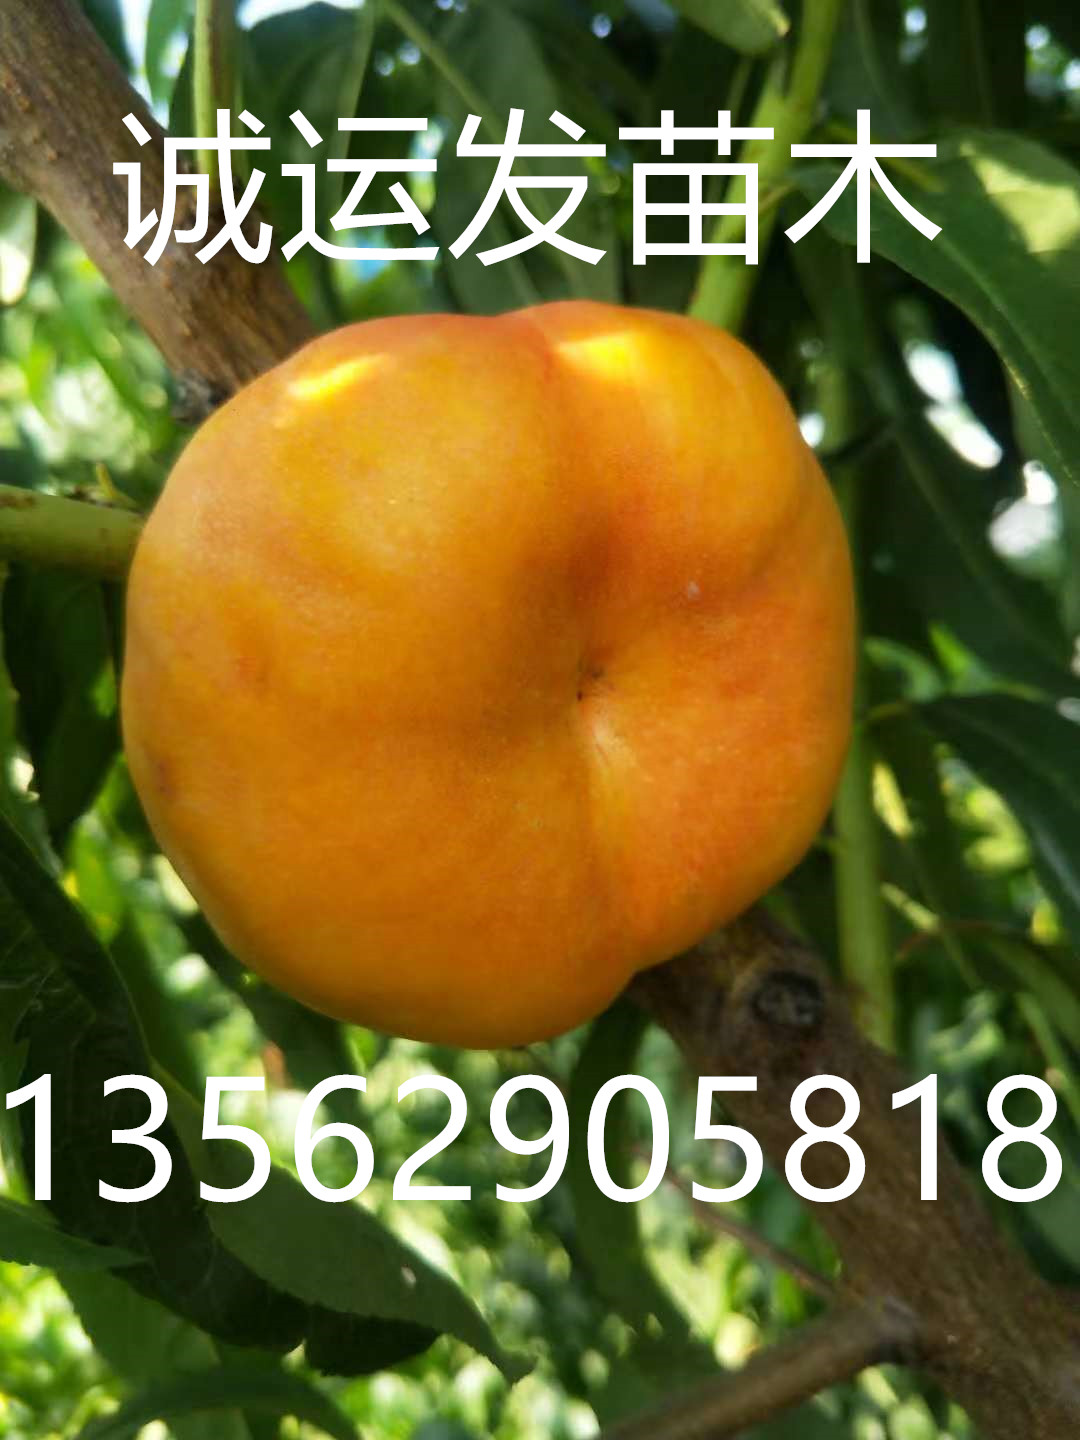 晚熟离核黄桃好品种七月中旬成熟的黄肉油桃有哪些品种